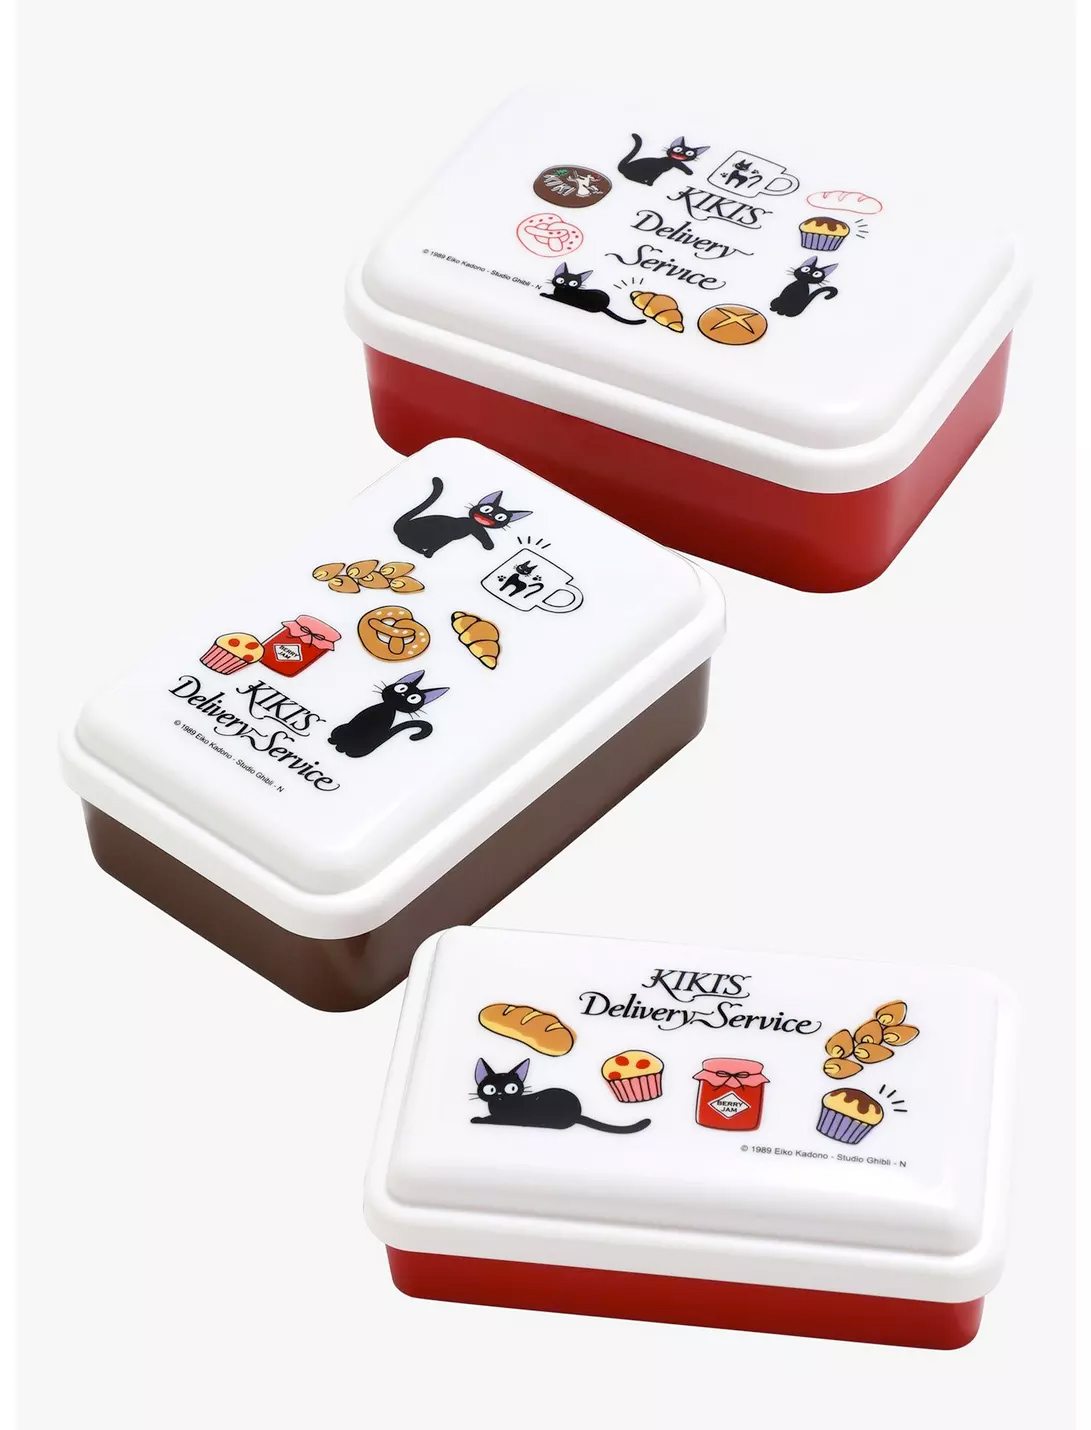 Trio Bento Box by Gata Jiji from Kiki's Delivery Service (Hayao Miyazaki)